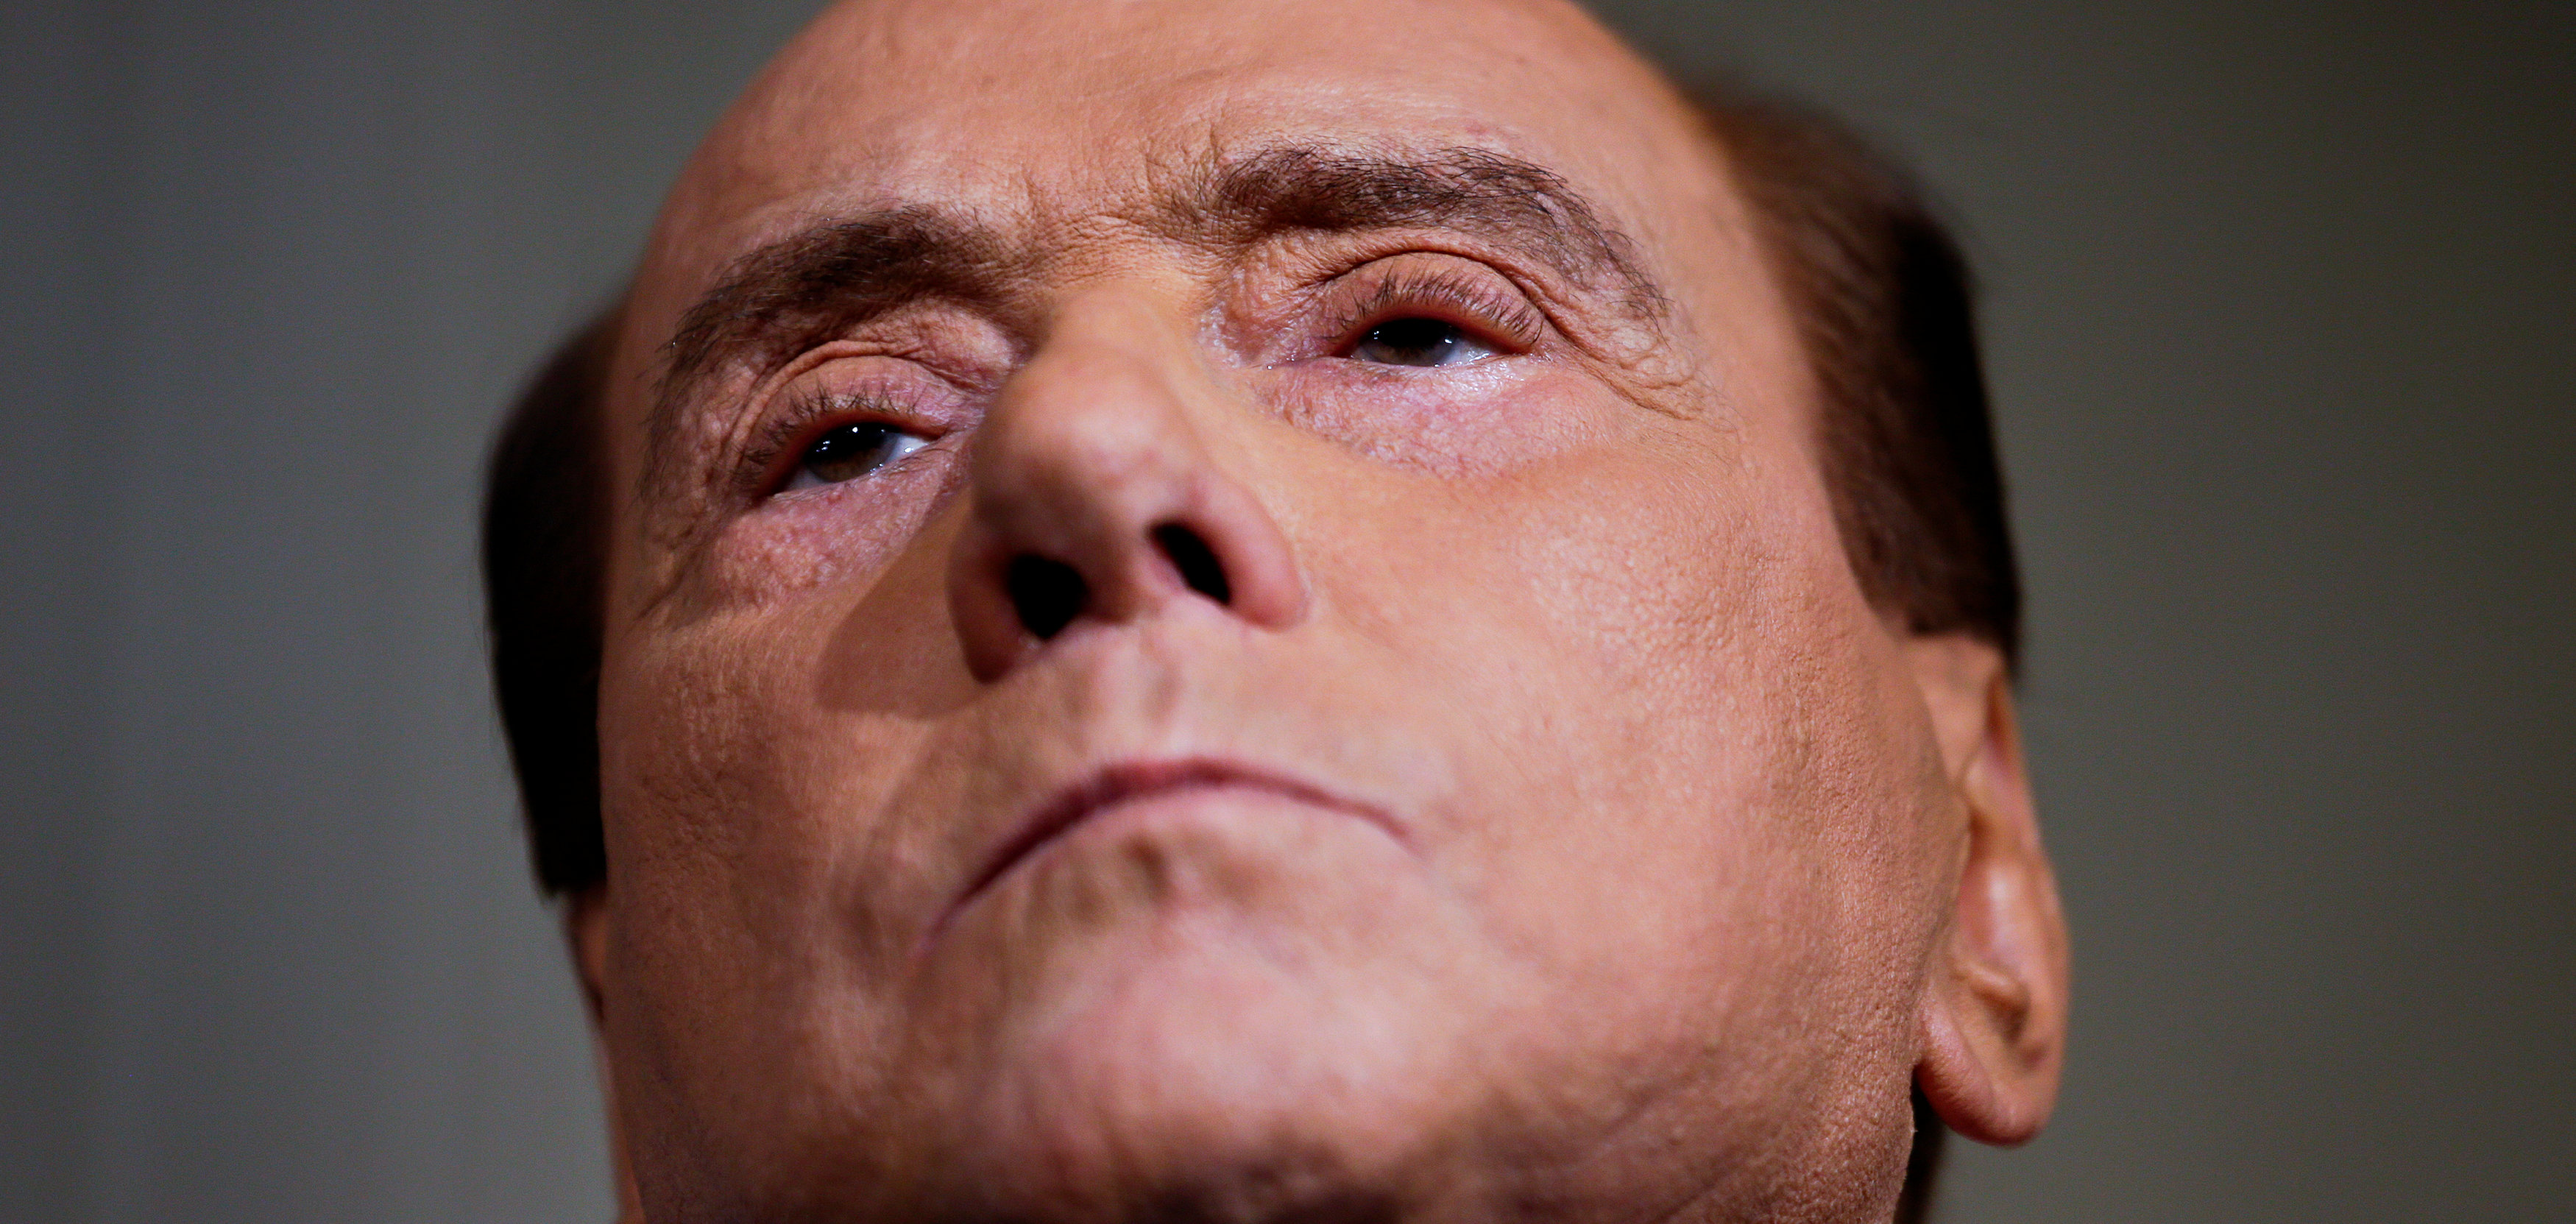 Berlusconi habló desde el hospital donde está internado por leucemia: “Es duro, pero voy a superarlo”